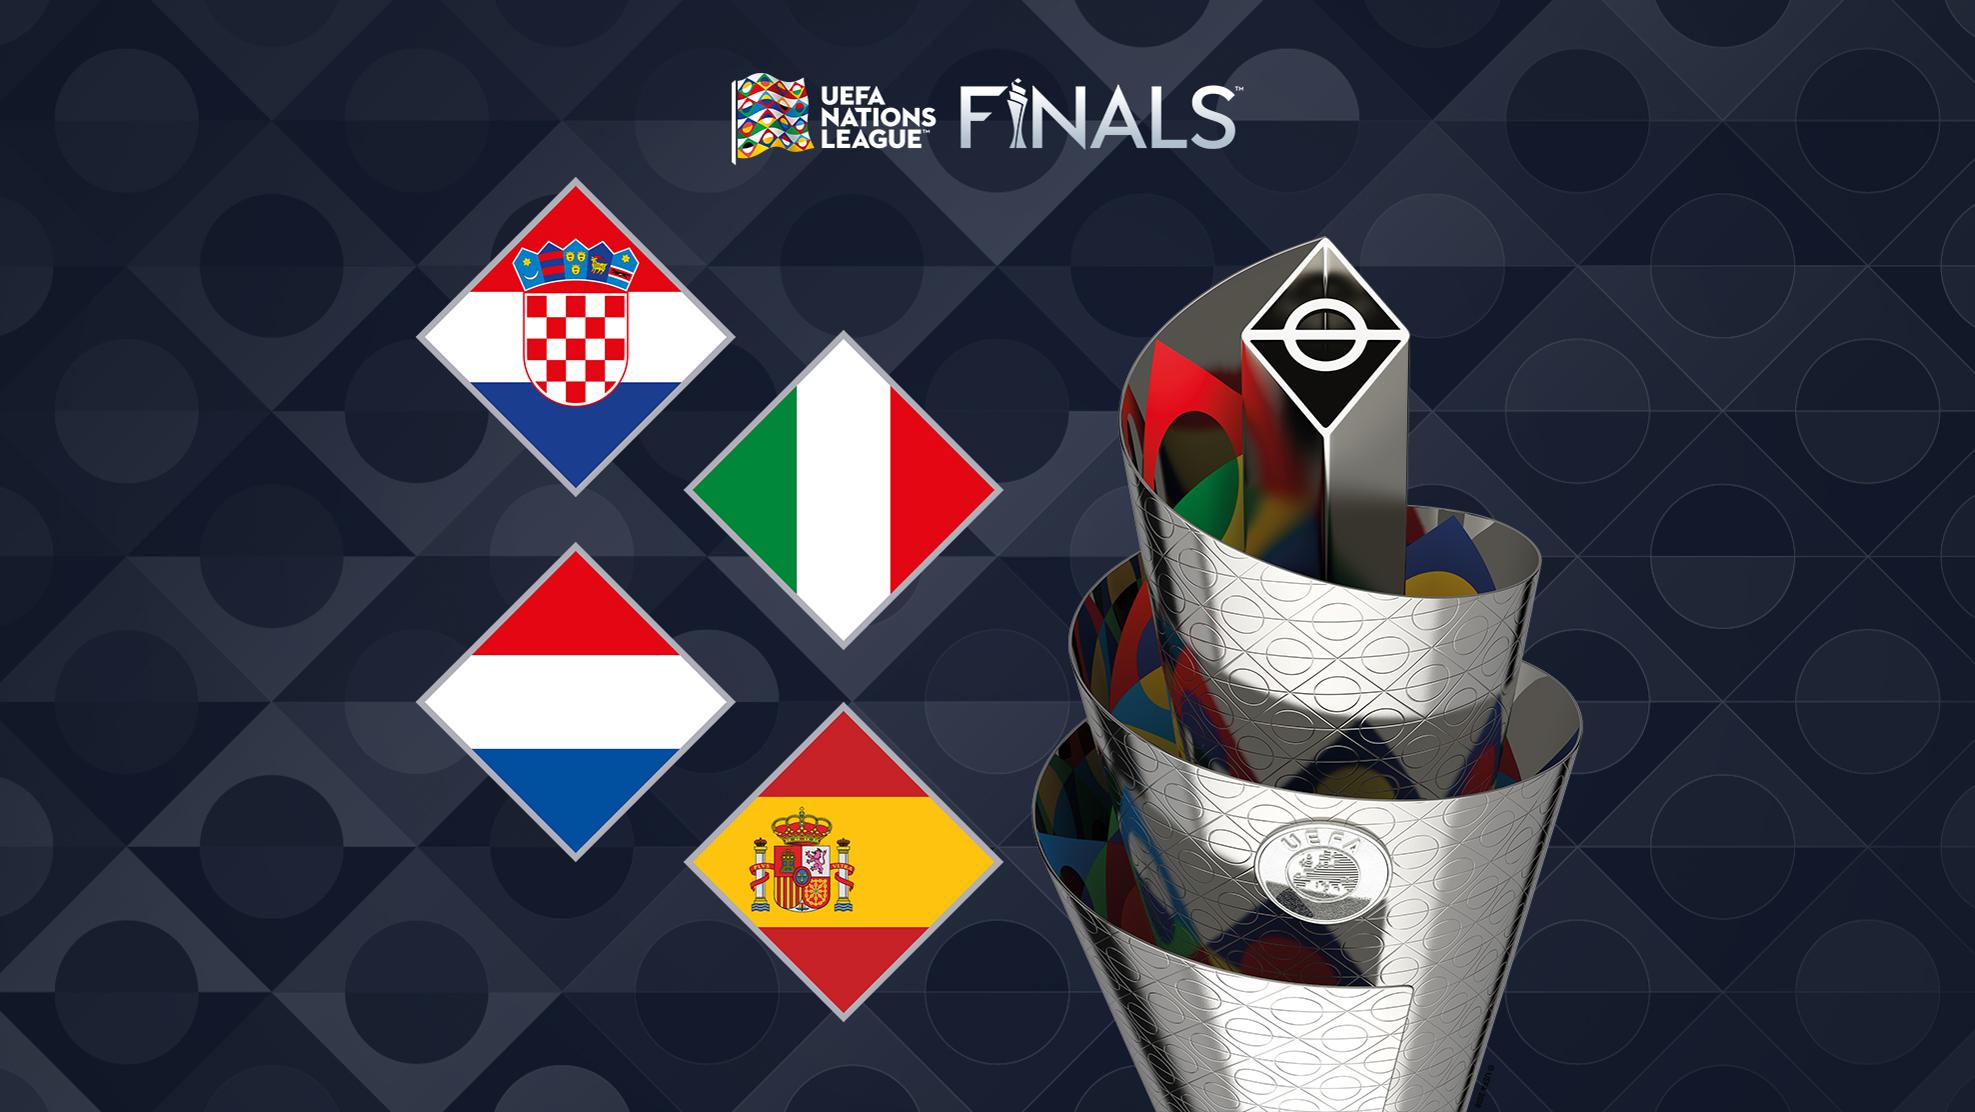 Remo Sumergir Rey Lear Fase final de la UEFA Nations League: selecciones, calendario, sede... |  UEFA Nations League | UEFA.com